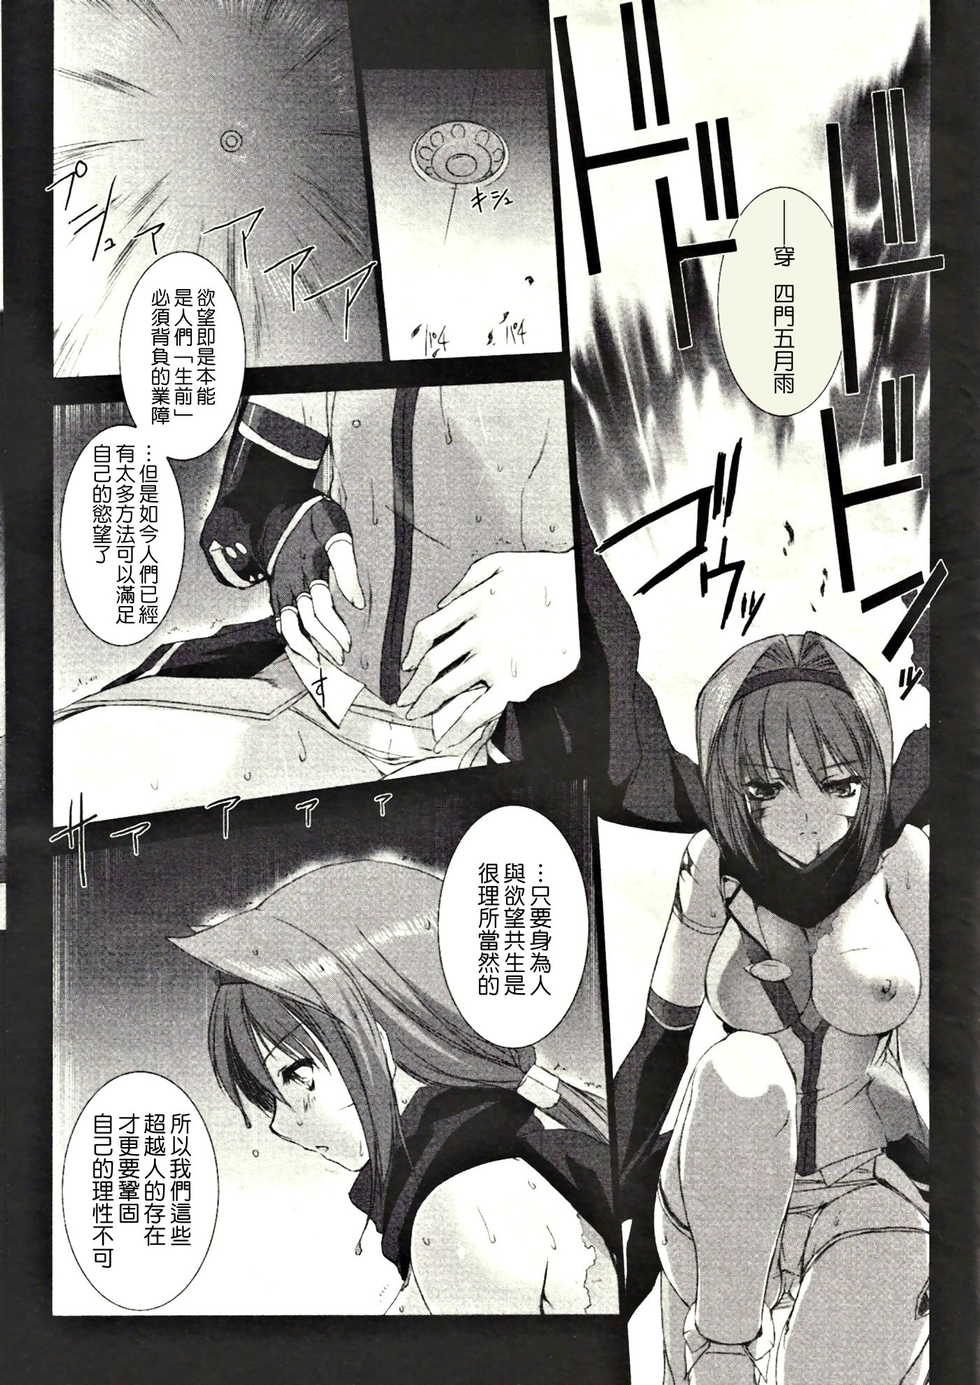 [MISS BLACK] 超昂閃忍ハルカ Vol.3 - Page 40